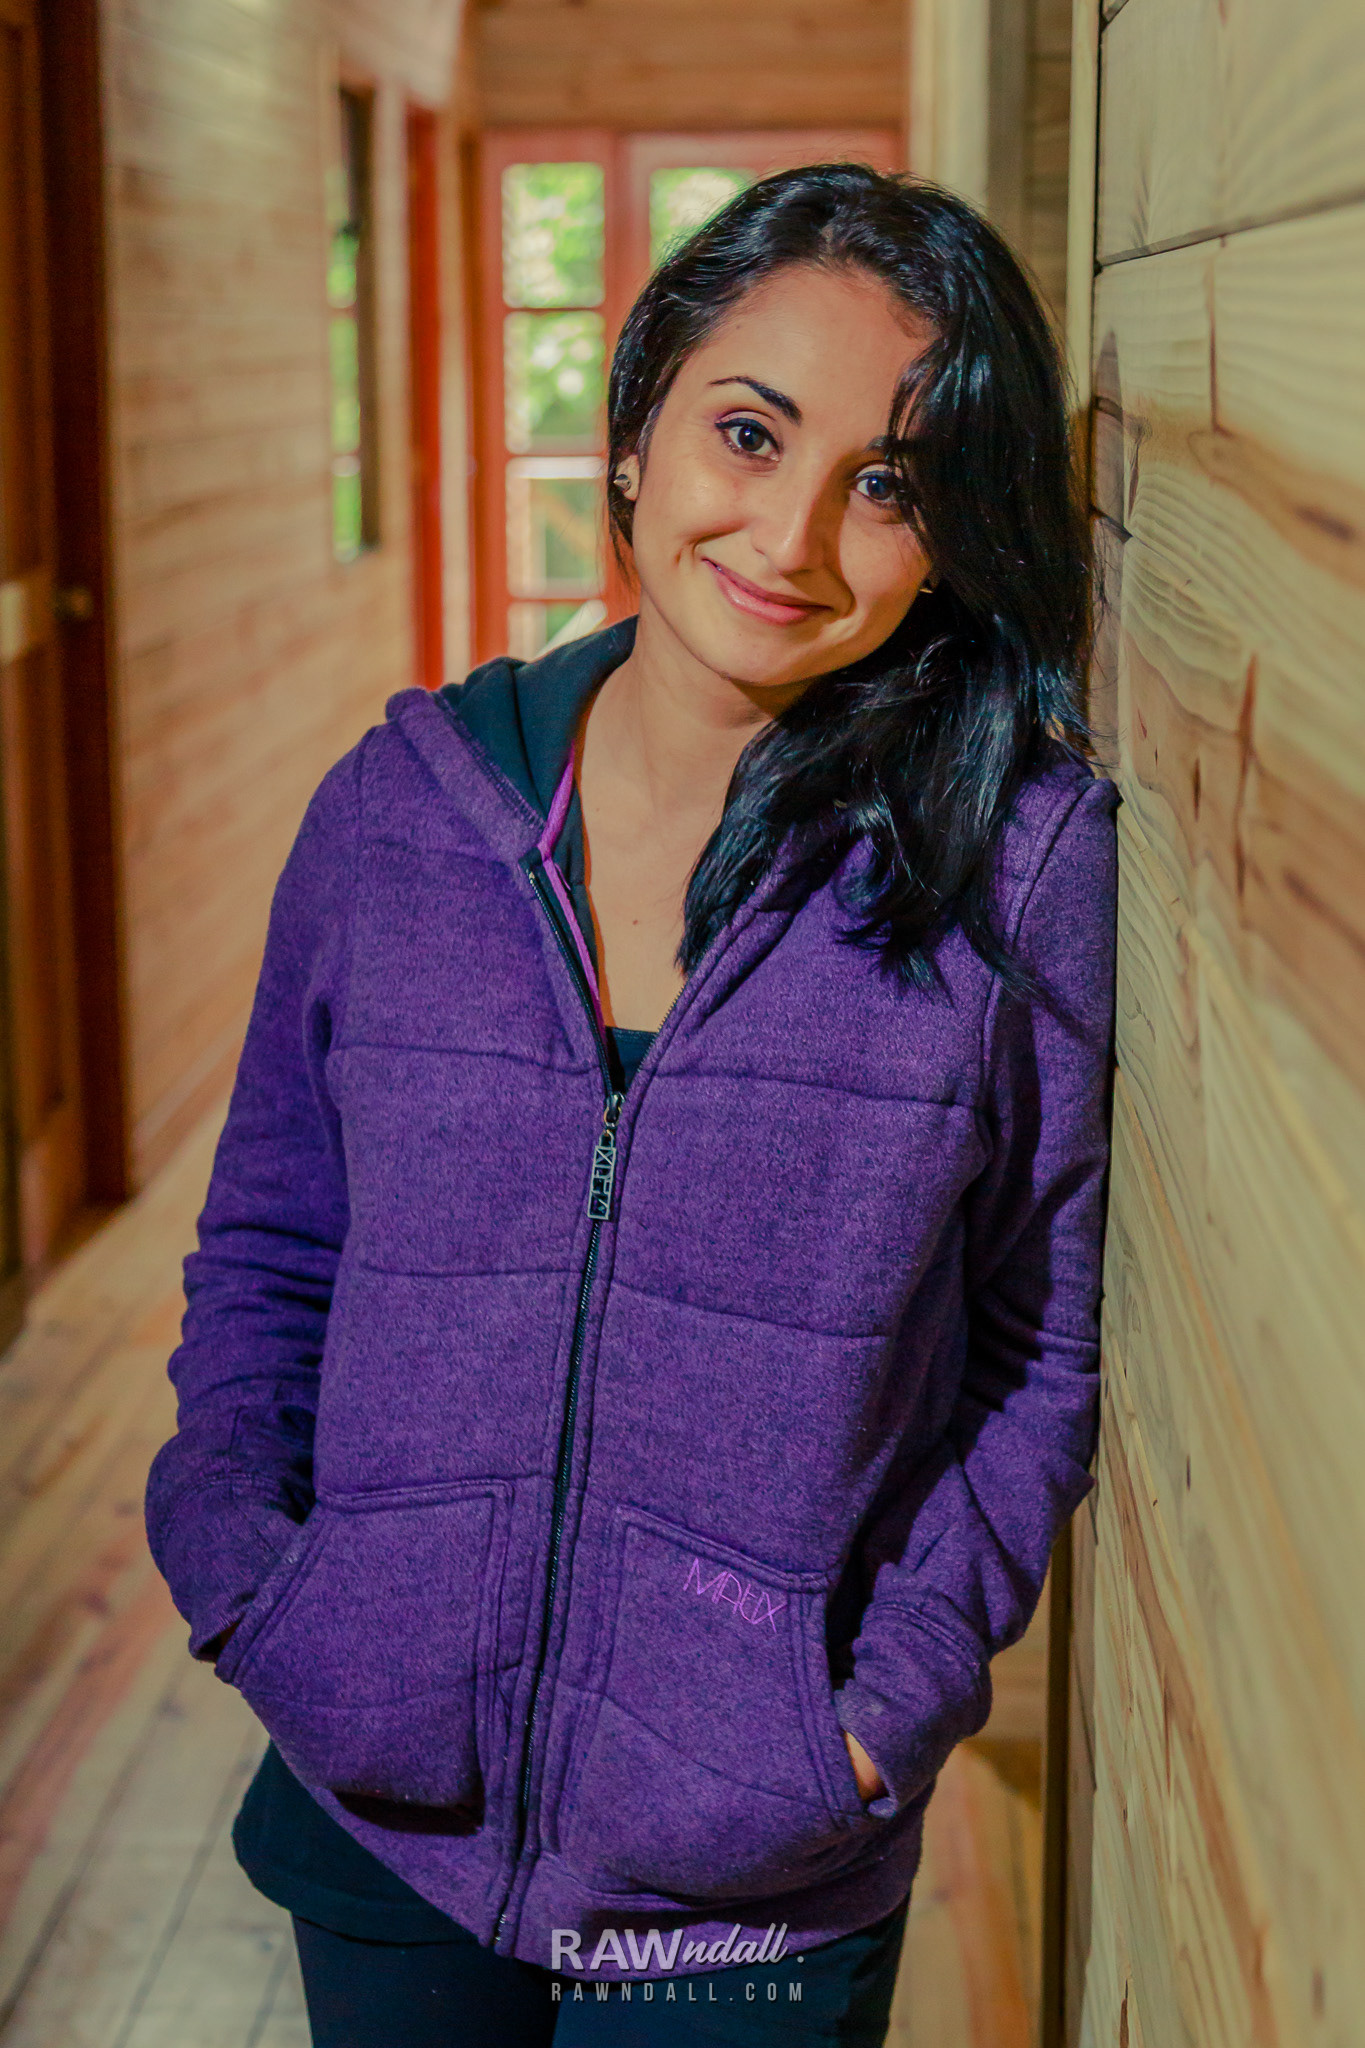 Mujer con una sueta lila posando en una casa de madera.